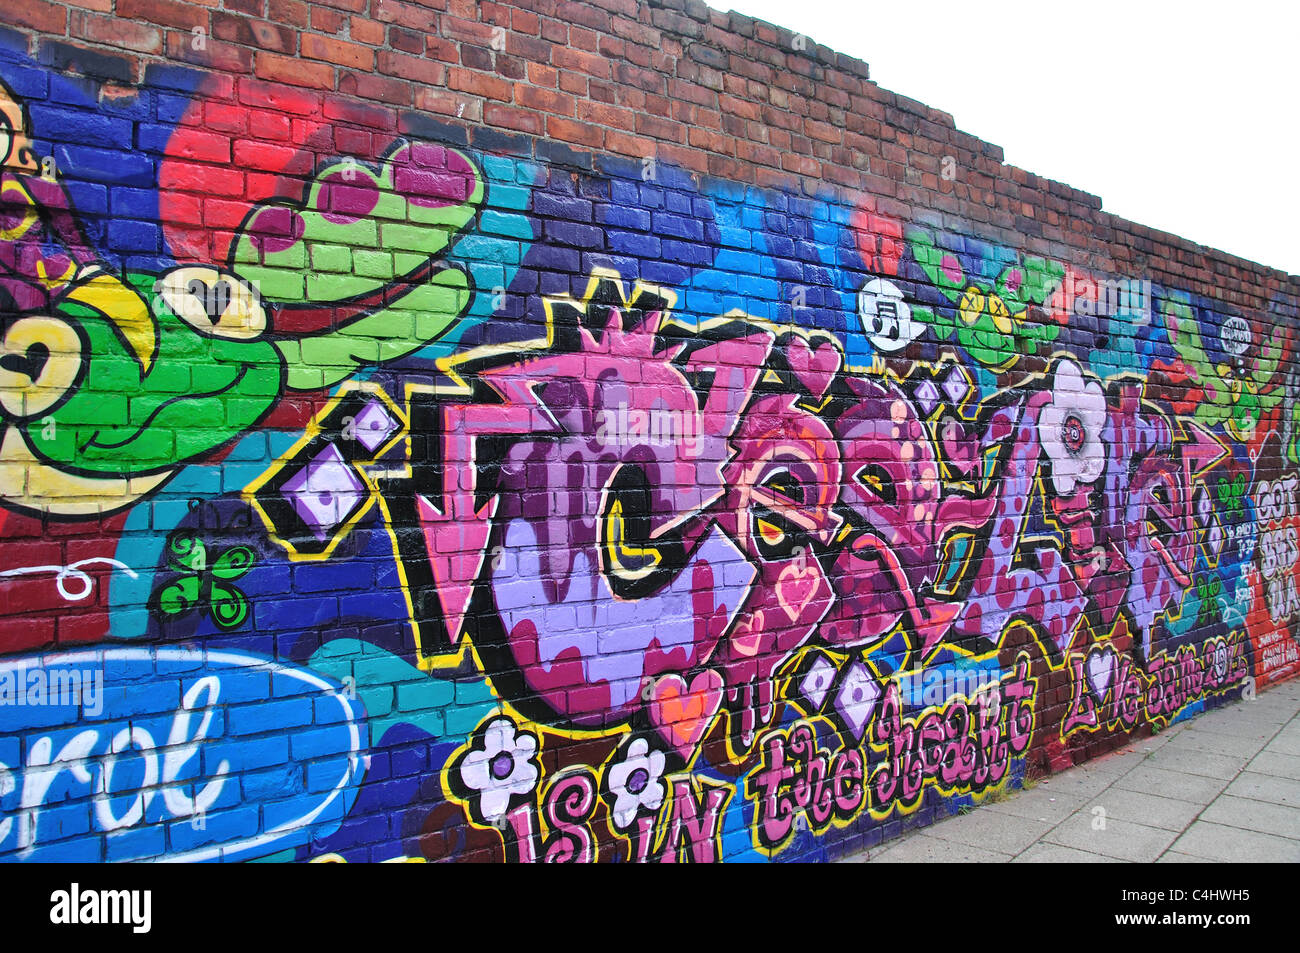 Arte dei graffiti sul muro, Gateshead, Tyne and Wear, England, Regno Unito Foto Stock